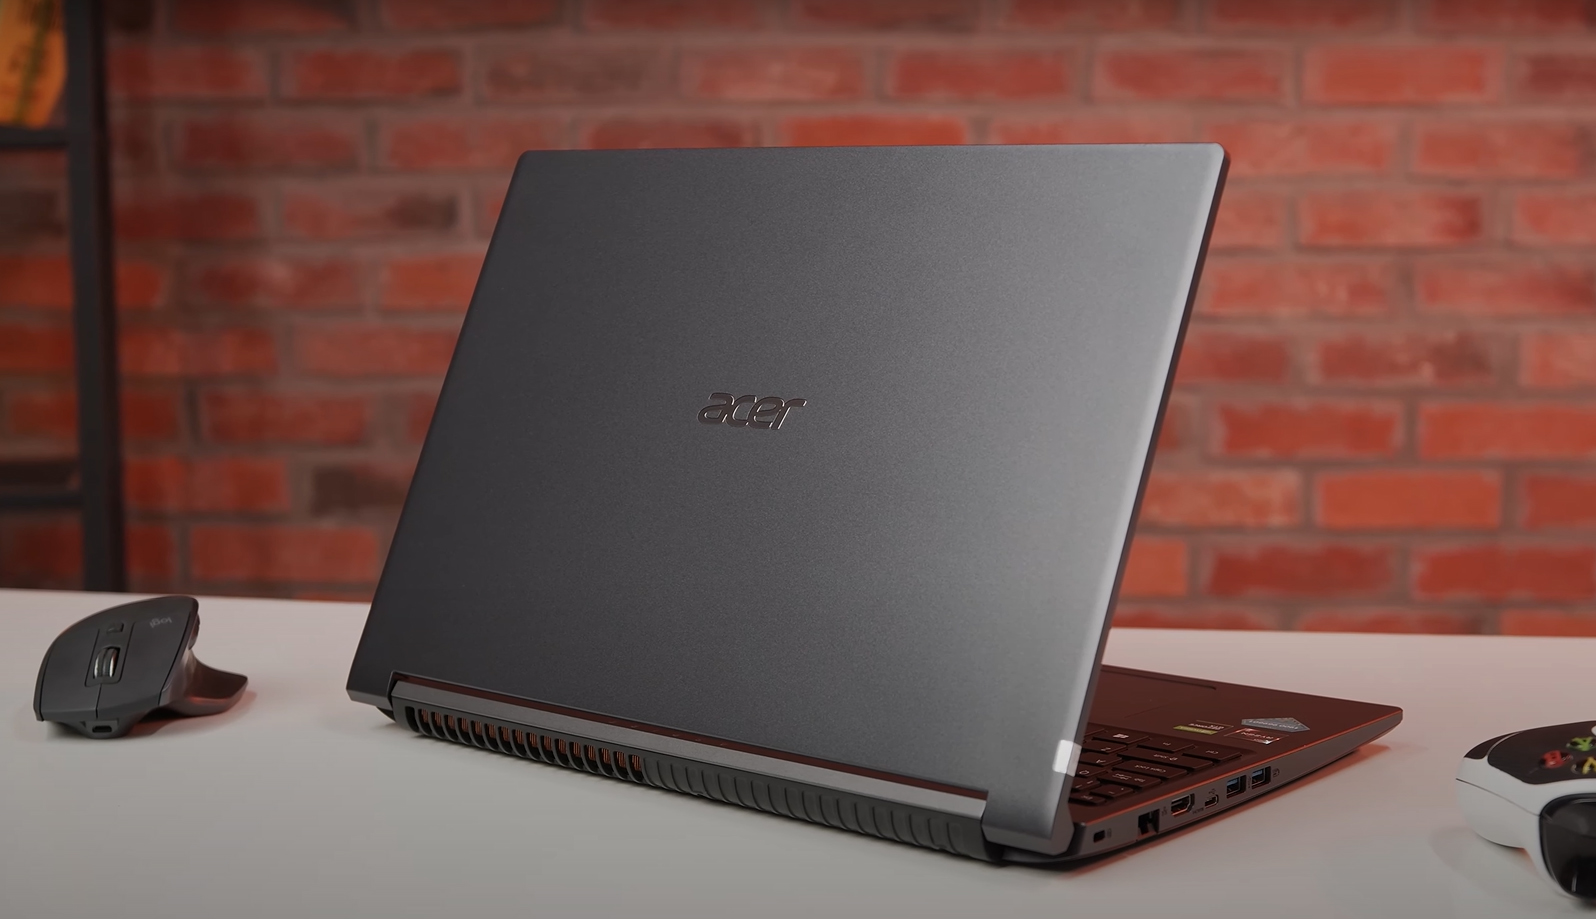 Acer Aspire 7 Gaming mang vẻ ngoài tối giản và đậm chất văn phòng